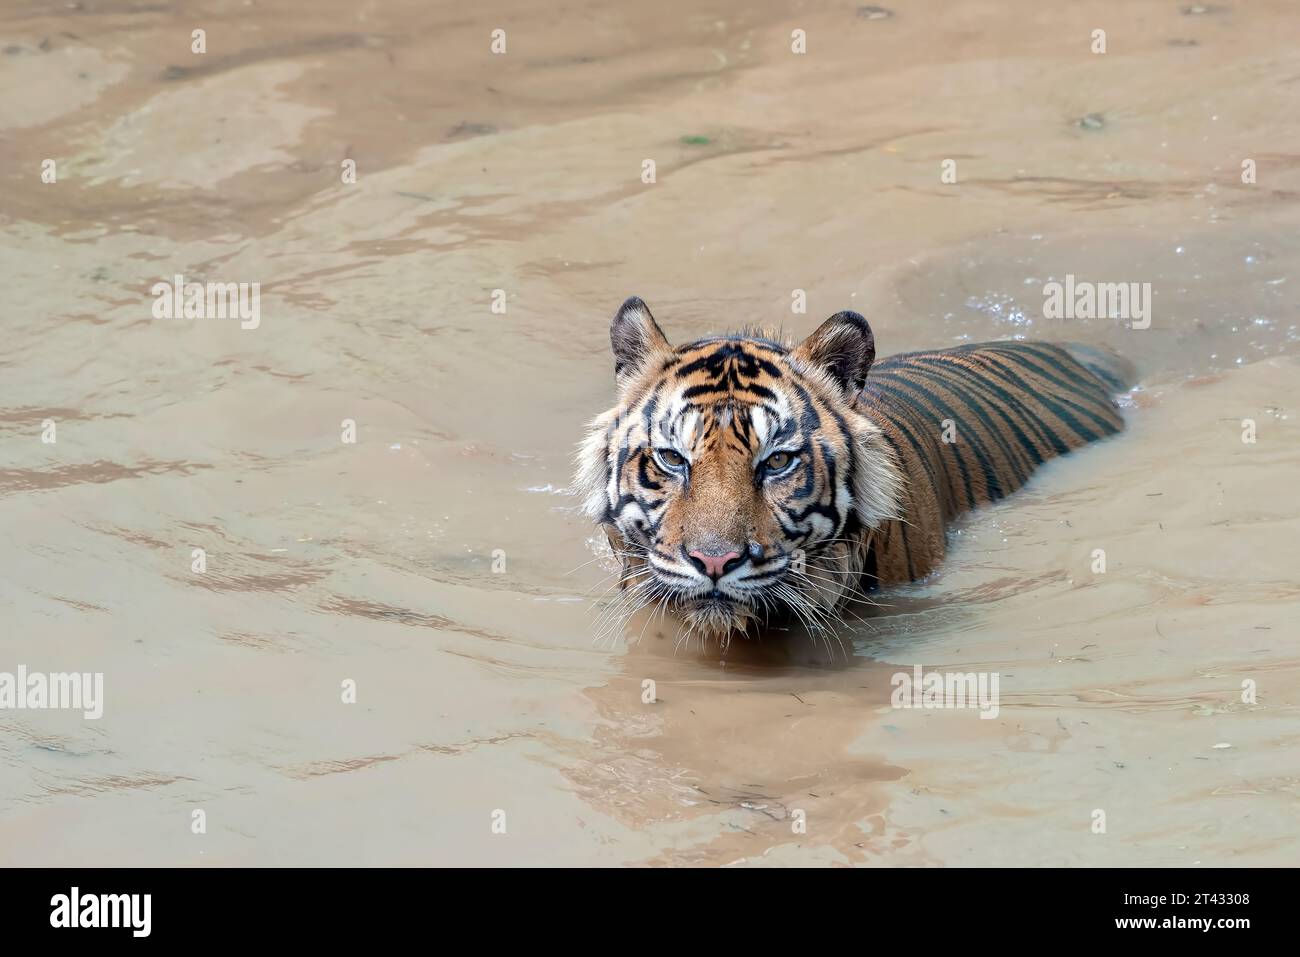 Nahaufnahme eines Tigers, der in einem Fluss in Indonesien schwimmt Stockfoto